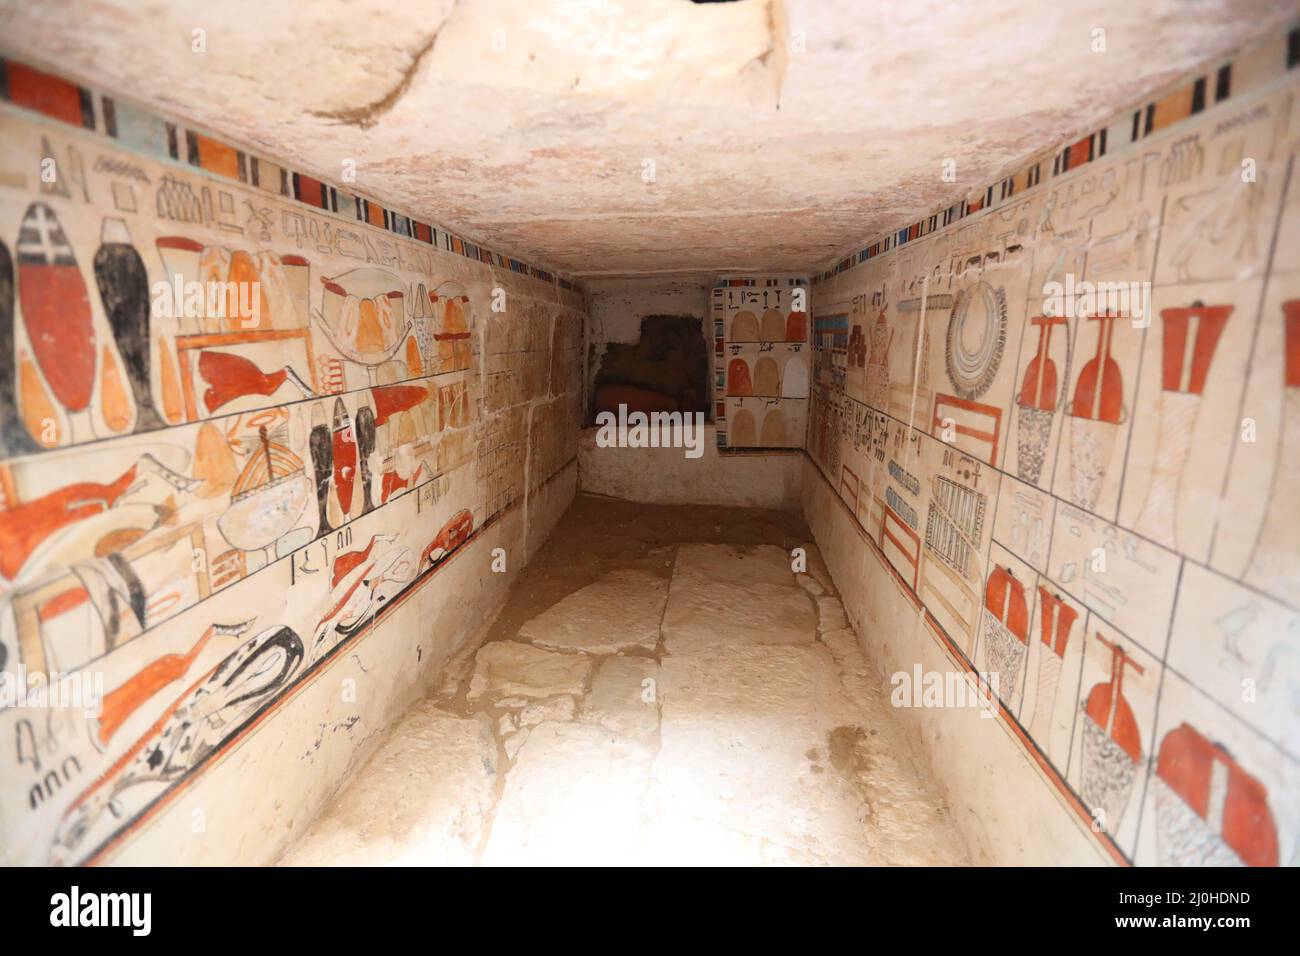 (220319) -- LE CAIRE, 19 mars 2022 (Xinhua) -- la photo montre les peintures murales dans une ancienne tombe découverte aux sites archéologiques de Saqqara au sud-ouest du Caire, en Égypte, le 19 mars 2022. Le ministère égyptien du Tourisme et des Antiquités a annoncé jeudi la découverte de cinq tombes anciennes de 4 000 ans dans les sites archéologiques de Saqqara, au sud-ouest du Caire. Les tombes contiennent des découvertes et des objets datant de la fin de l'ancien Royaume s'étendant de 2686 BC à 2181 BC et le début de la première période intermédiaire s'étendant de 2181 BC à 2055 BC. ALLER AVEC 'l'Egypte découvre cinq 4,0 Banque D'Images